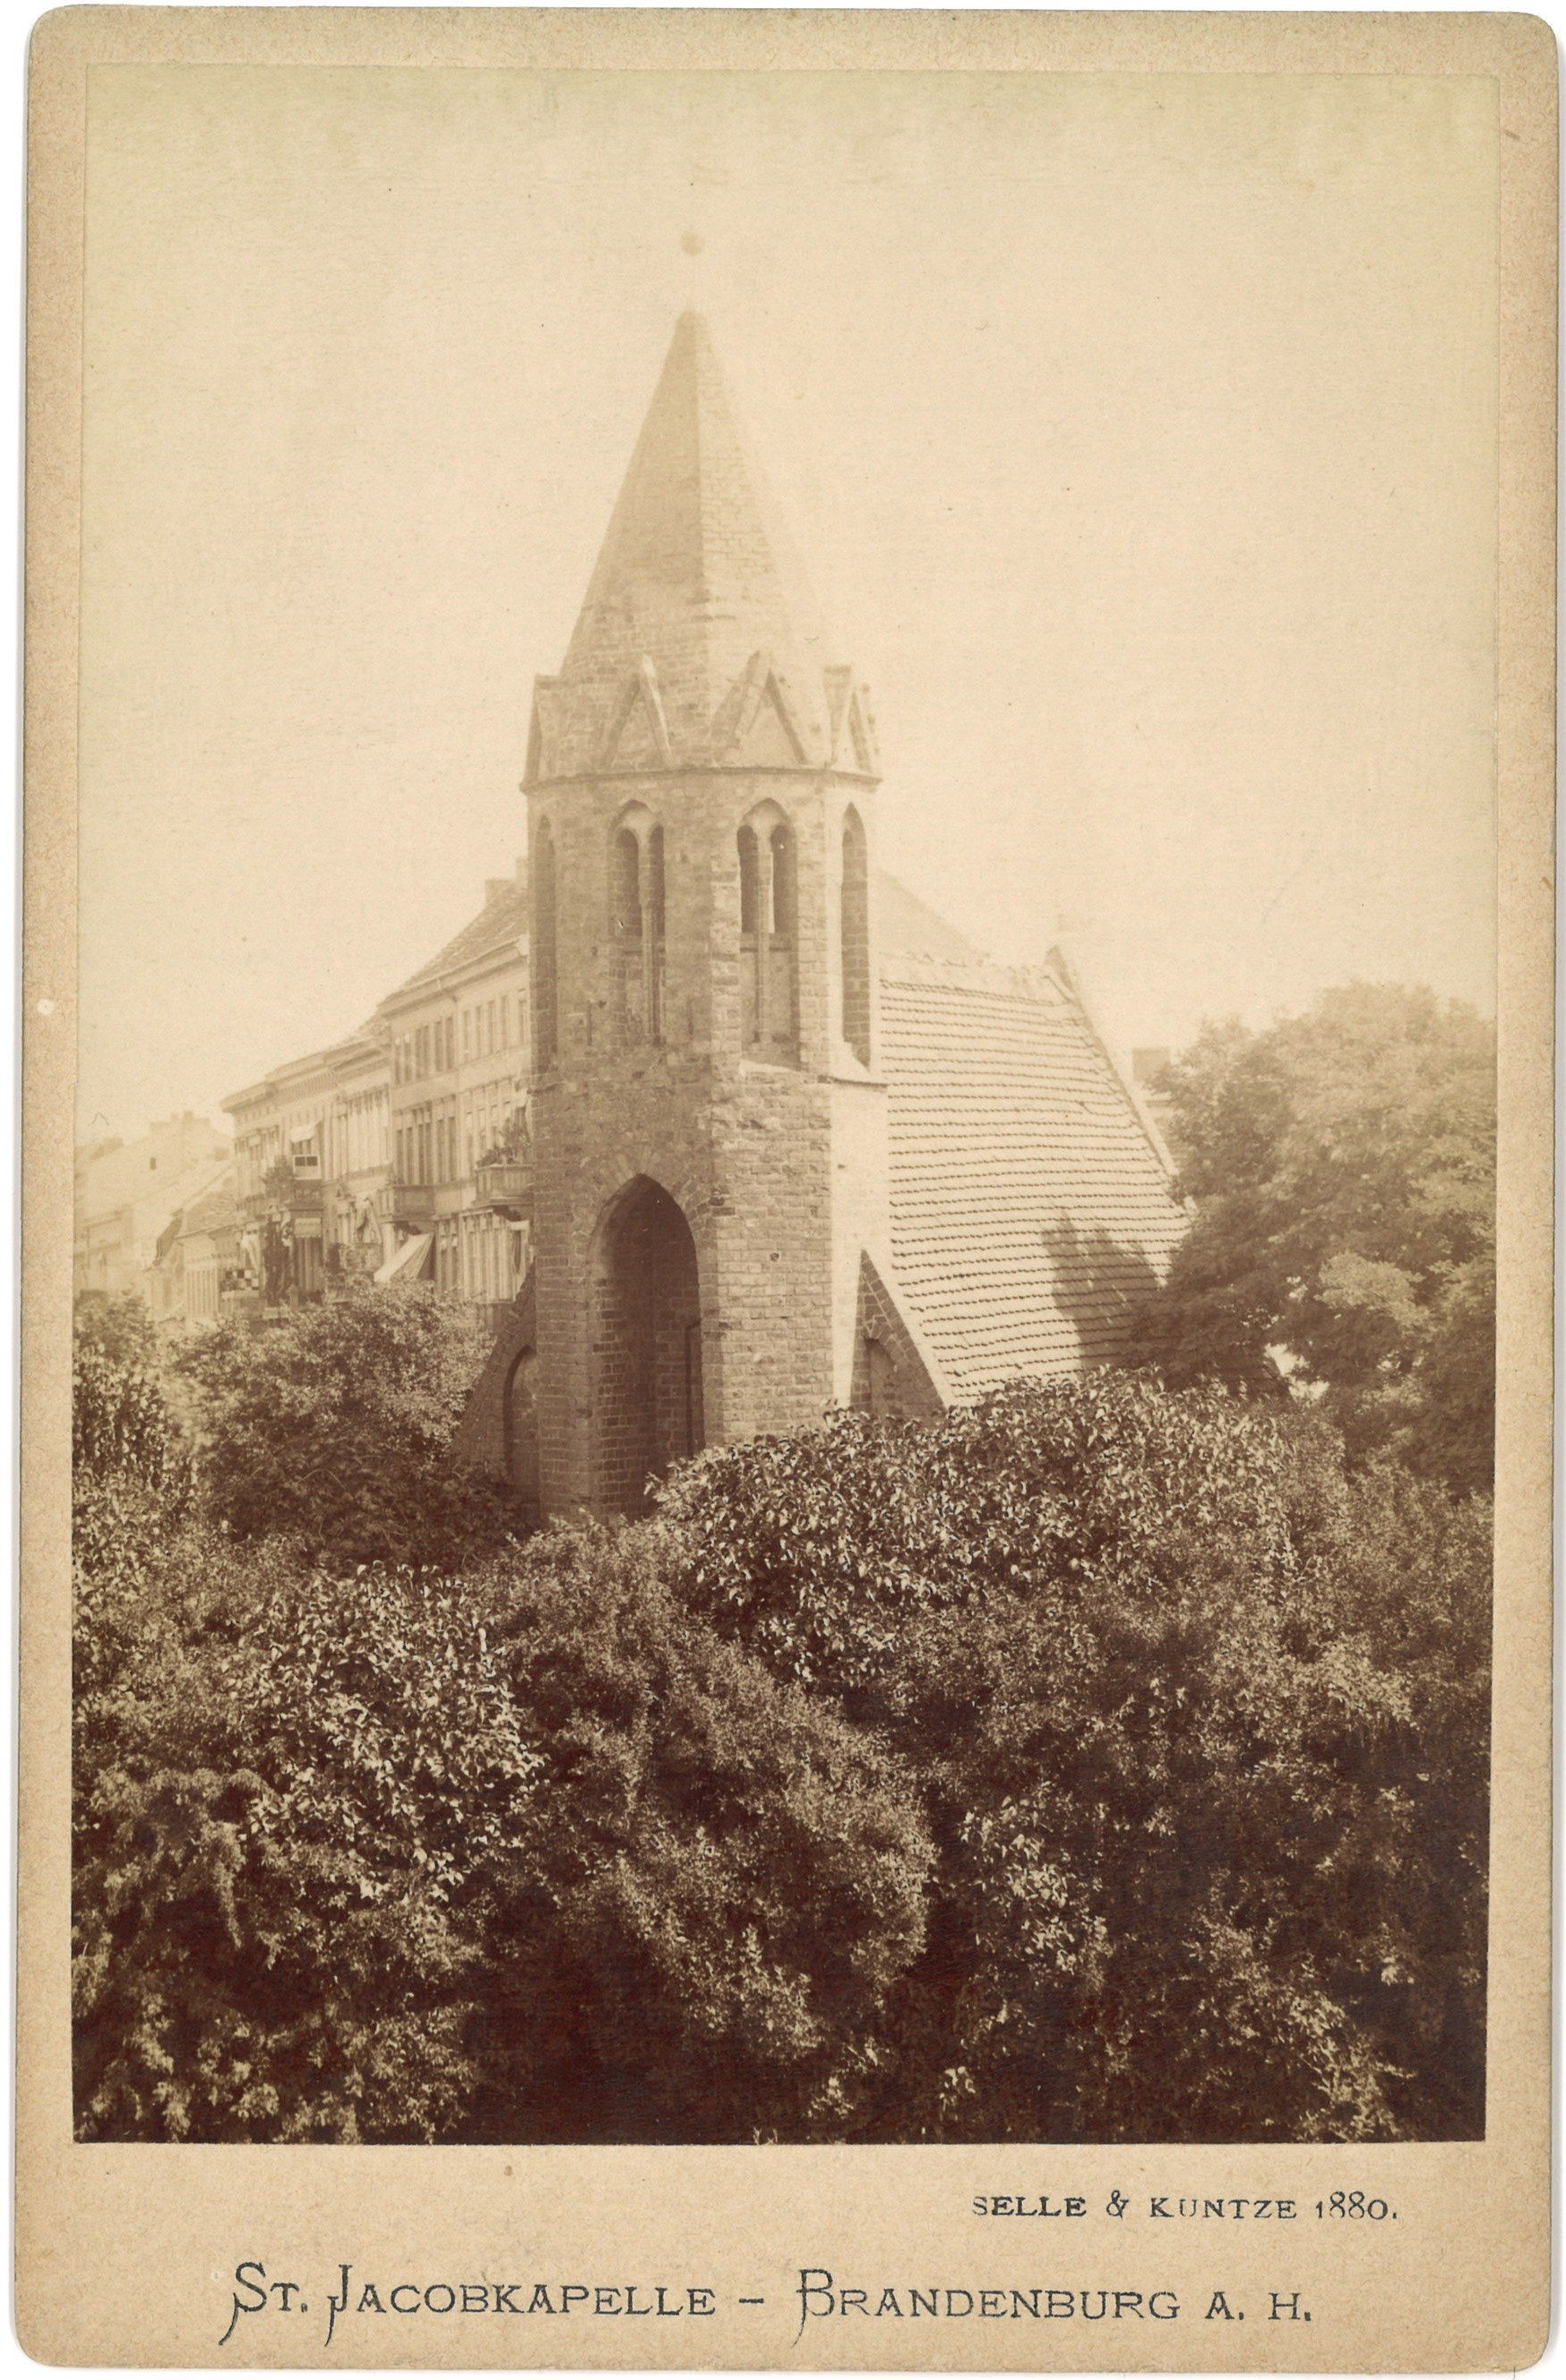 Brandenburg an der Havel: St. Jakobs-Kapelle (Landesgeschichtliche Vereinigung für die Mark Brandenburg e.V., Archiv CC BY)